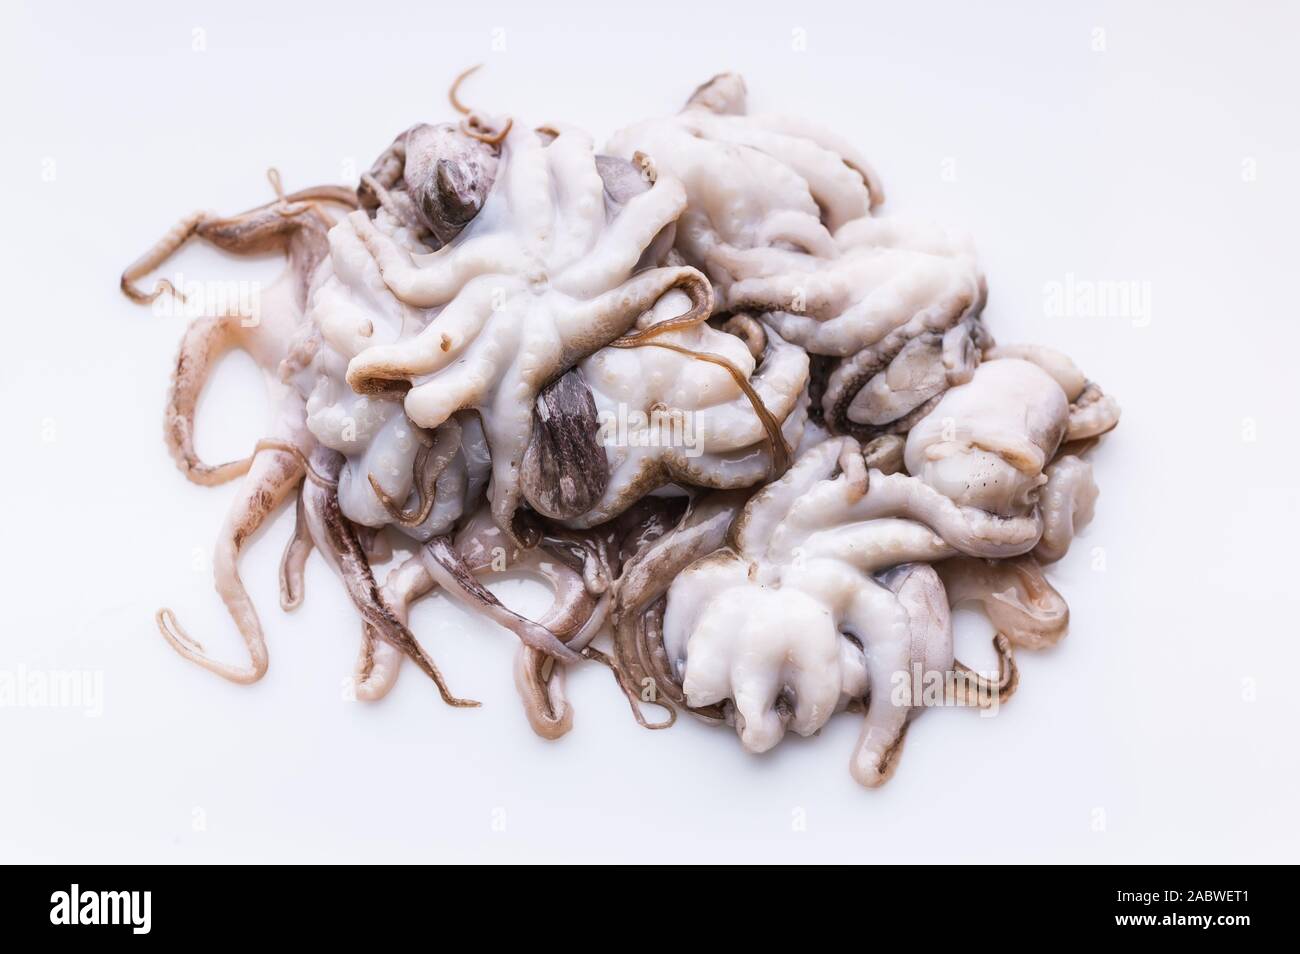 Wenig frisches Octopus auf einem weißen Hintergrund. Gesunde und köstliche Meeresfrüchte. Stockfoto